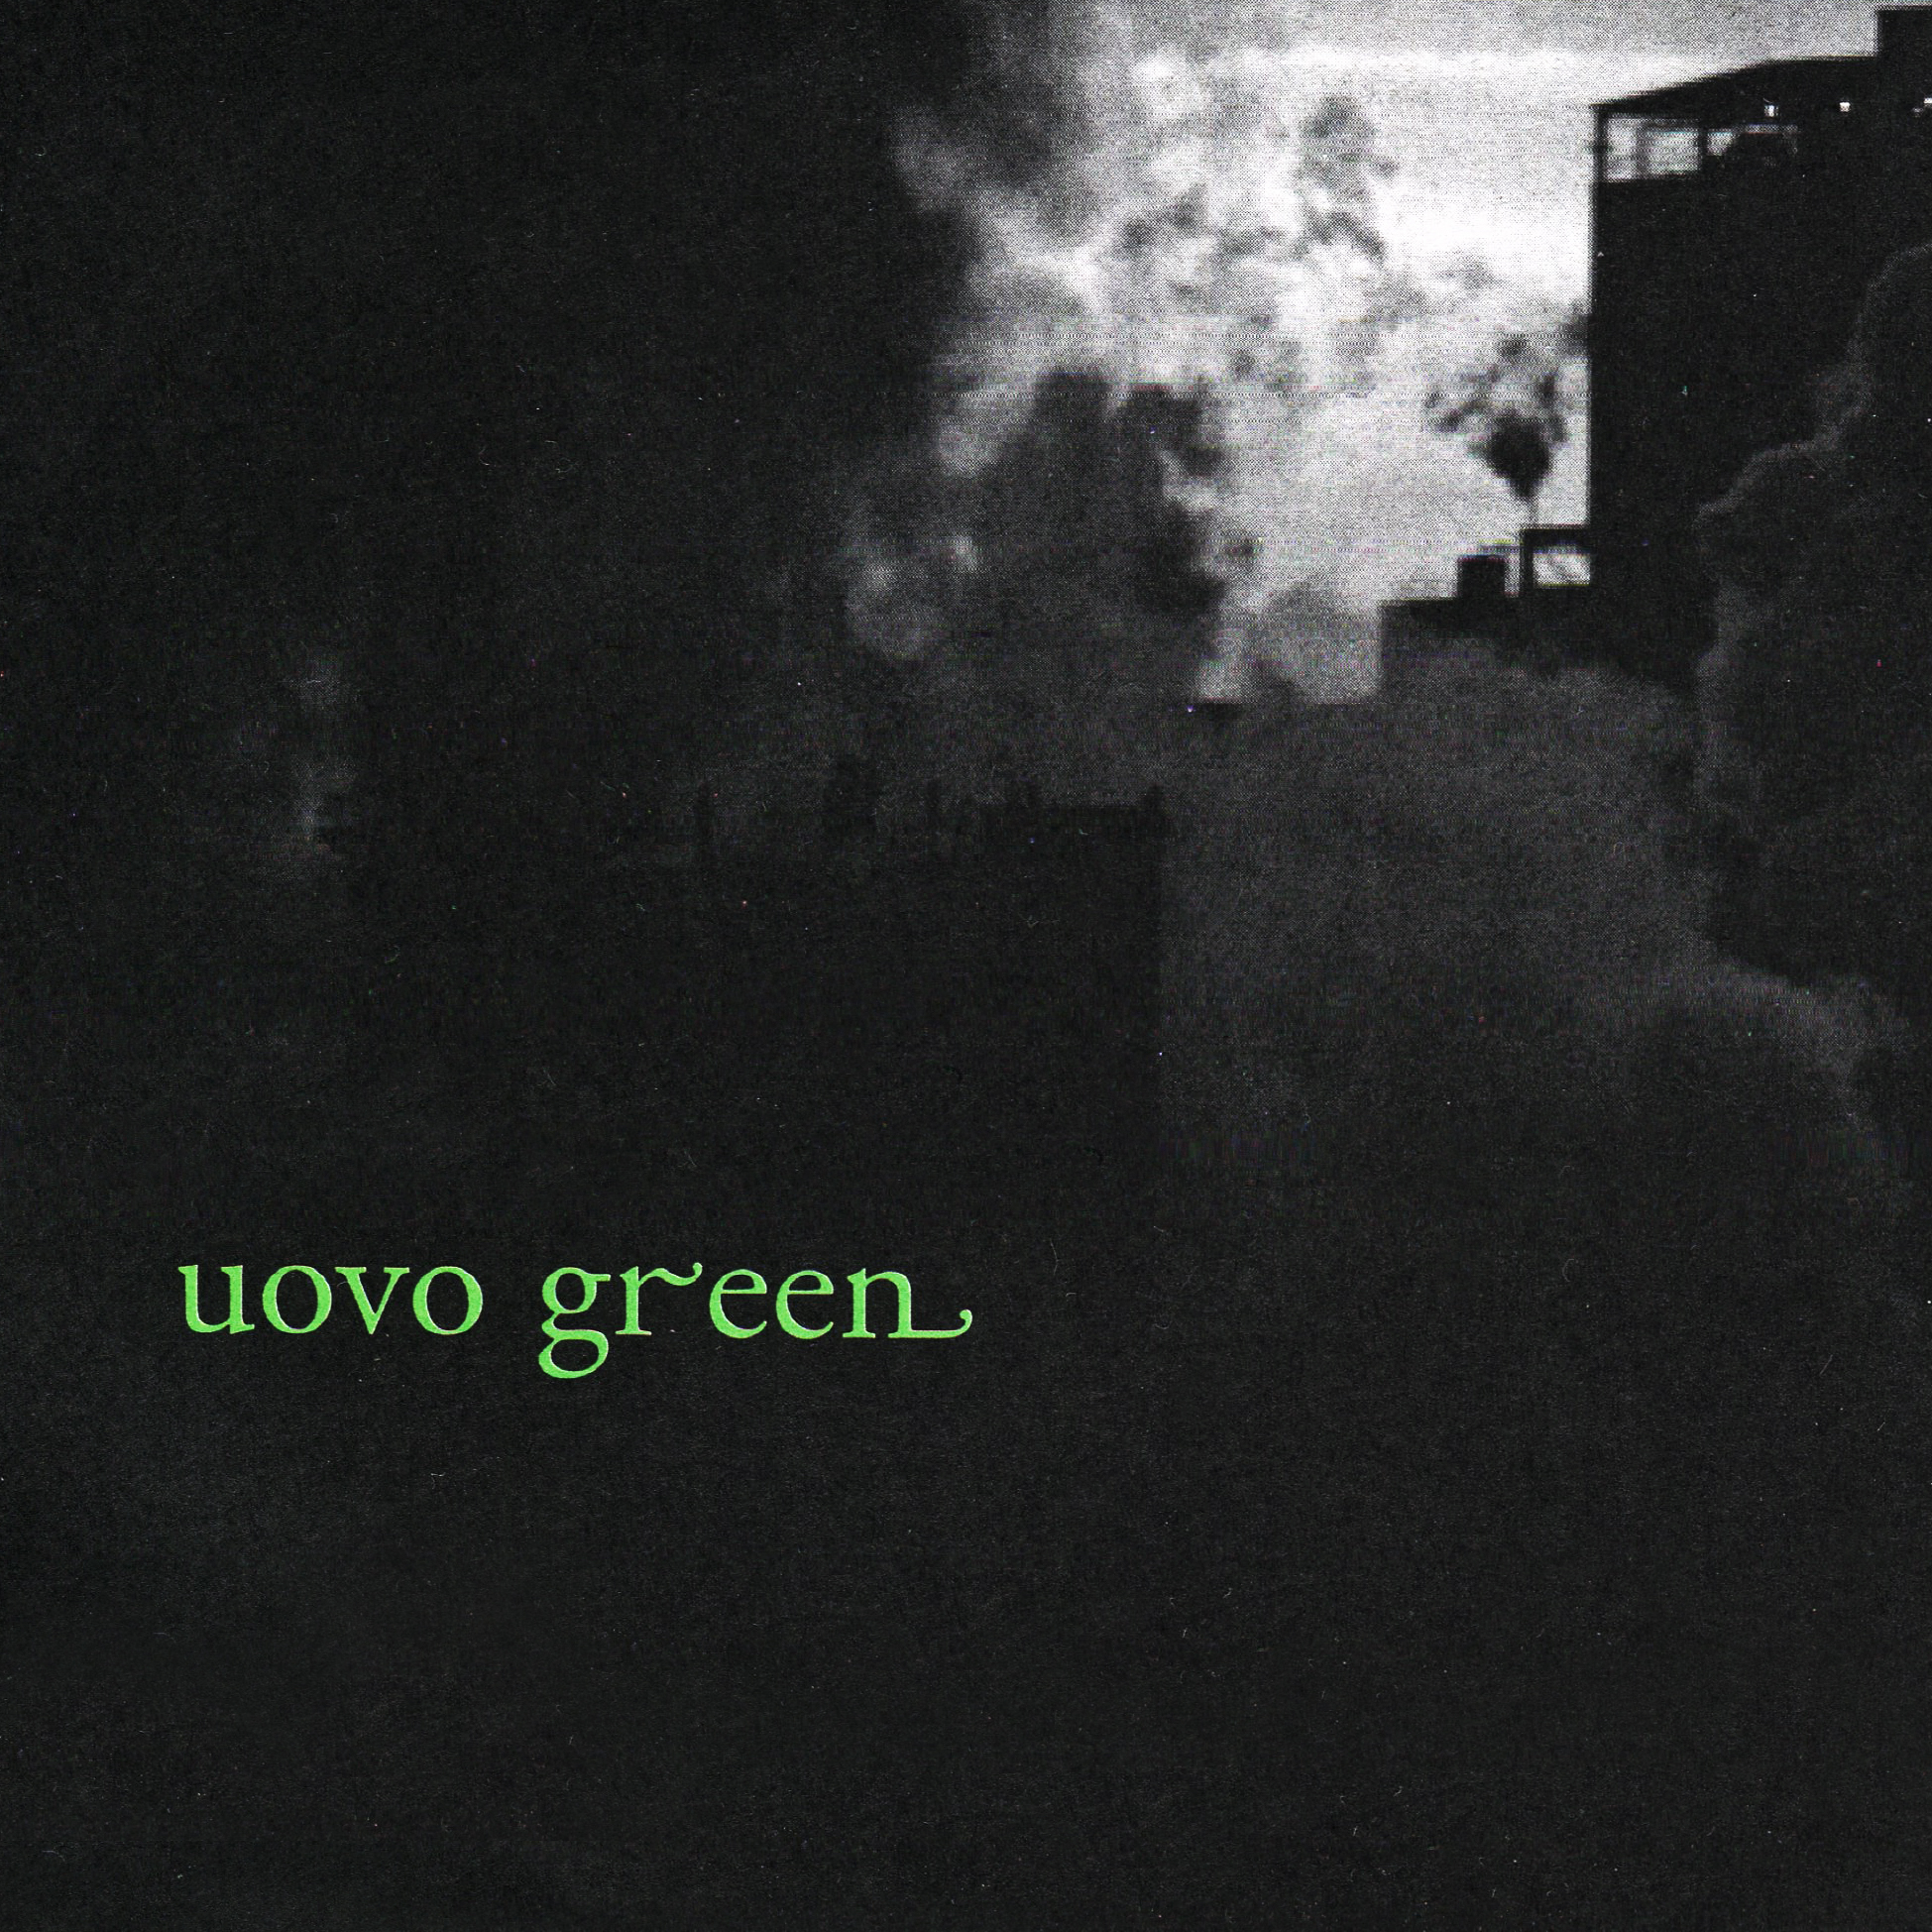 Uovo green compiltaion